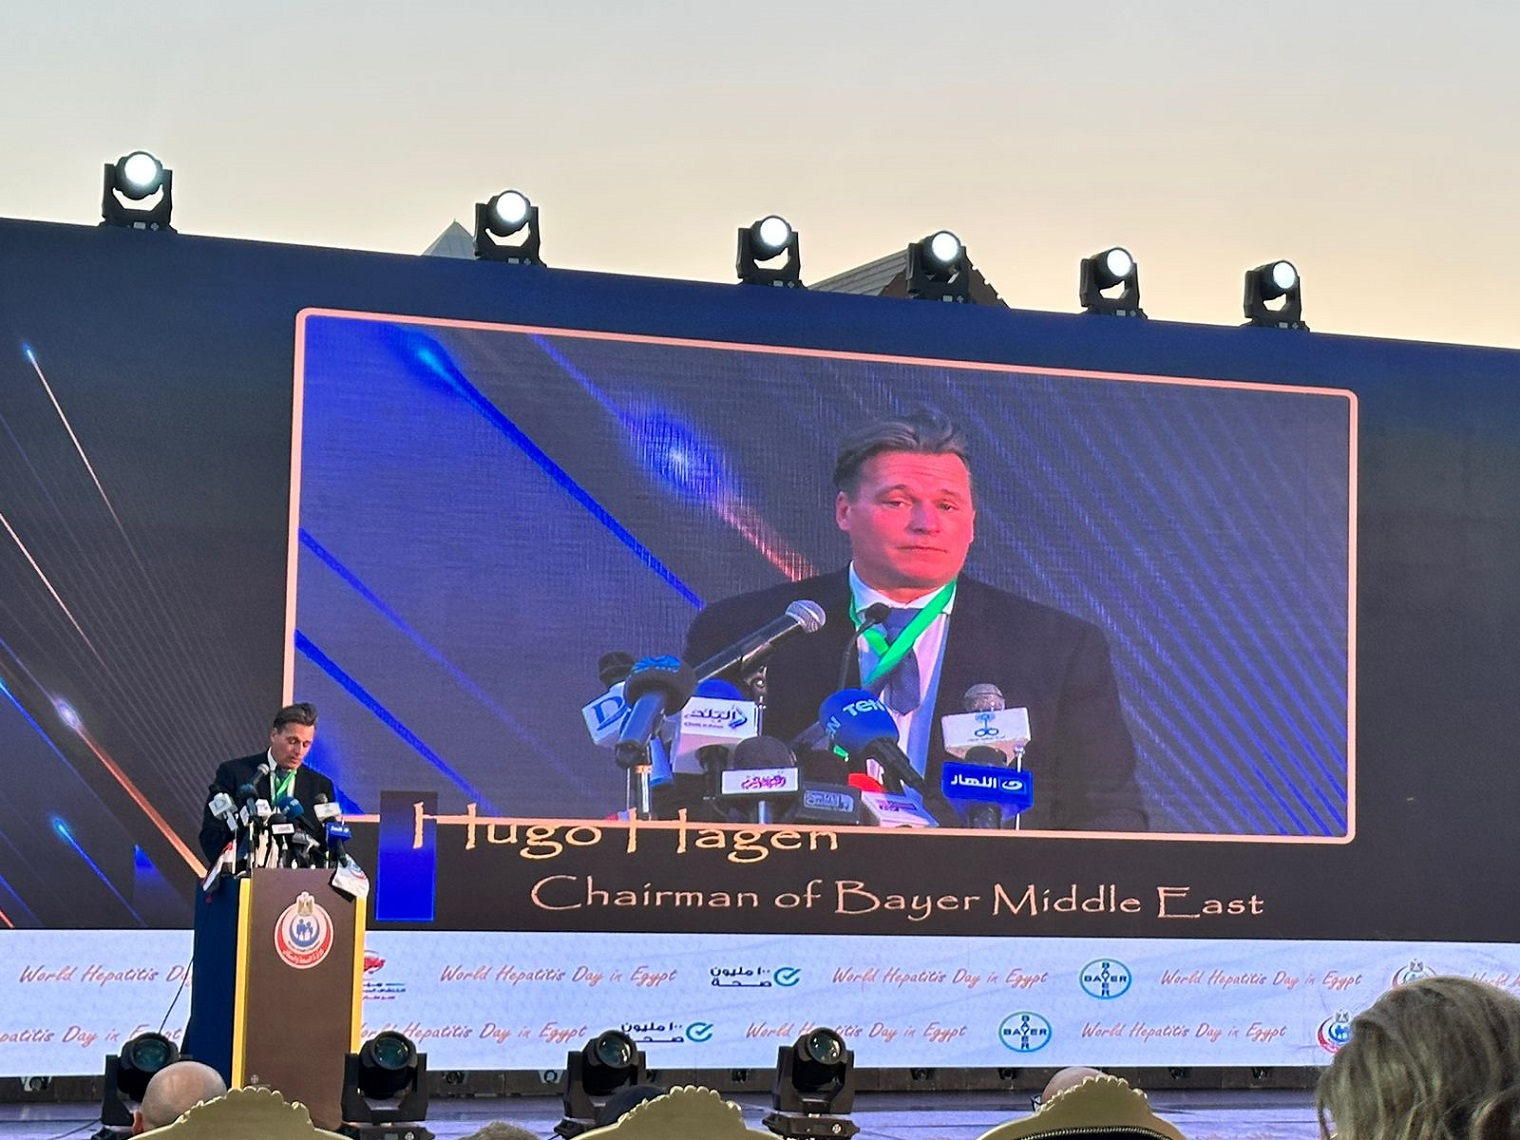 هيوجو هاغن رئيس شركة باير الألمانية في الشرق الأوسط 11